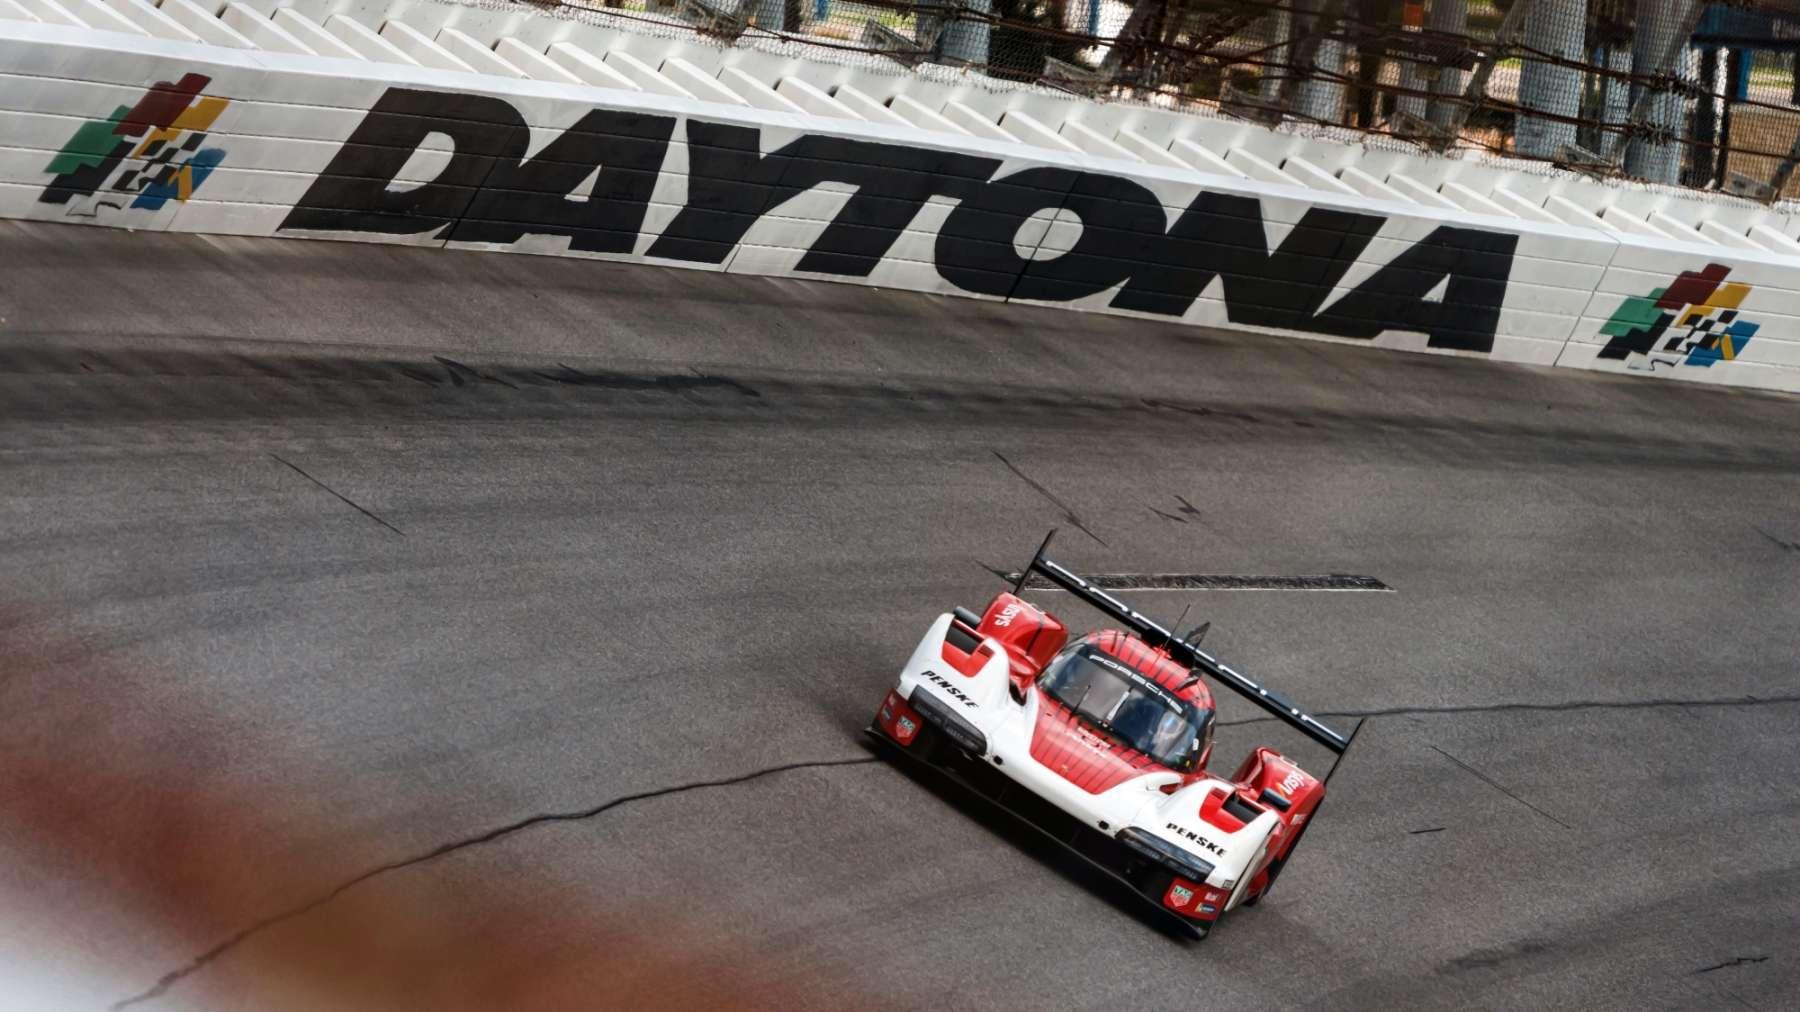 Porsche 963 LMDh to debut at 24h of Daytona   elferspotcom   Magazine